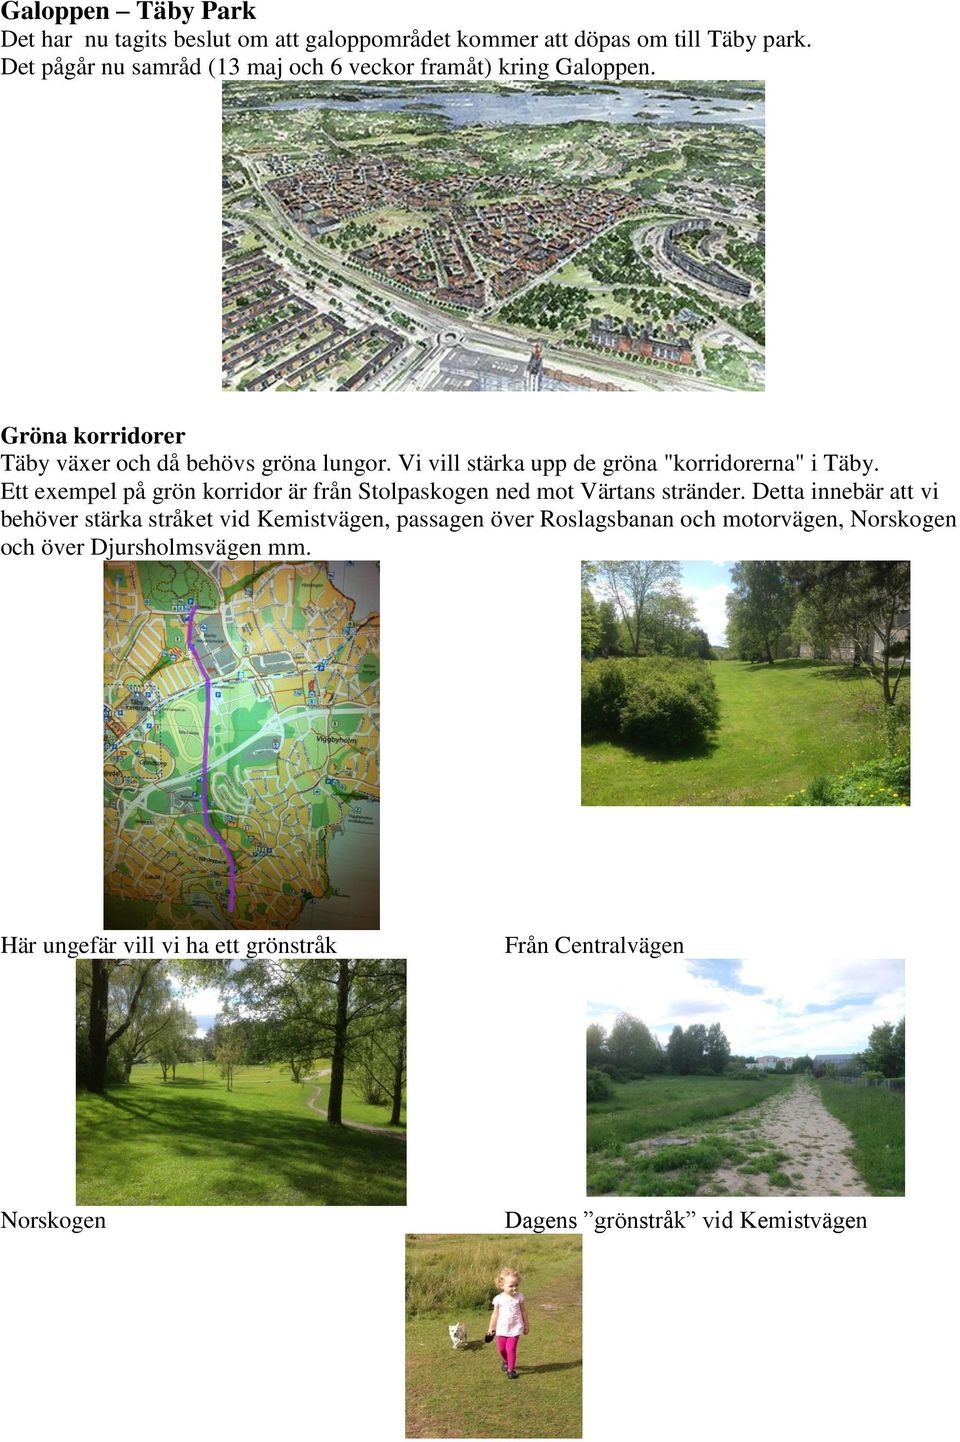 Vi vill stärka upp de gröna "korridorerna" i Täby. Ett exempel på grön korridor är från Stolpaskogen ned mot Värtans stränder.